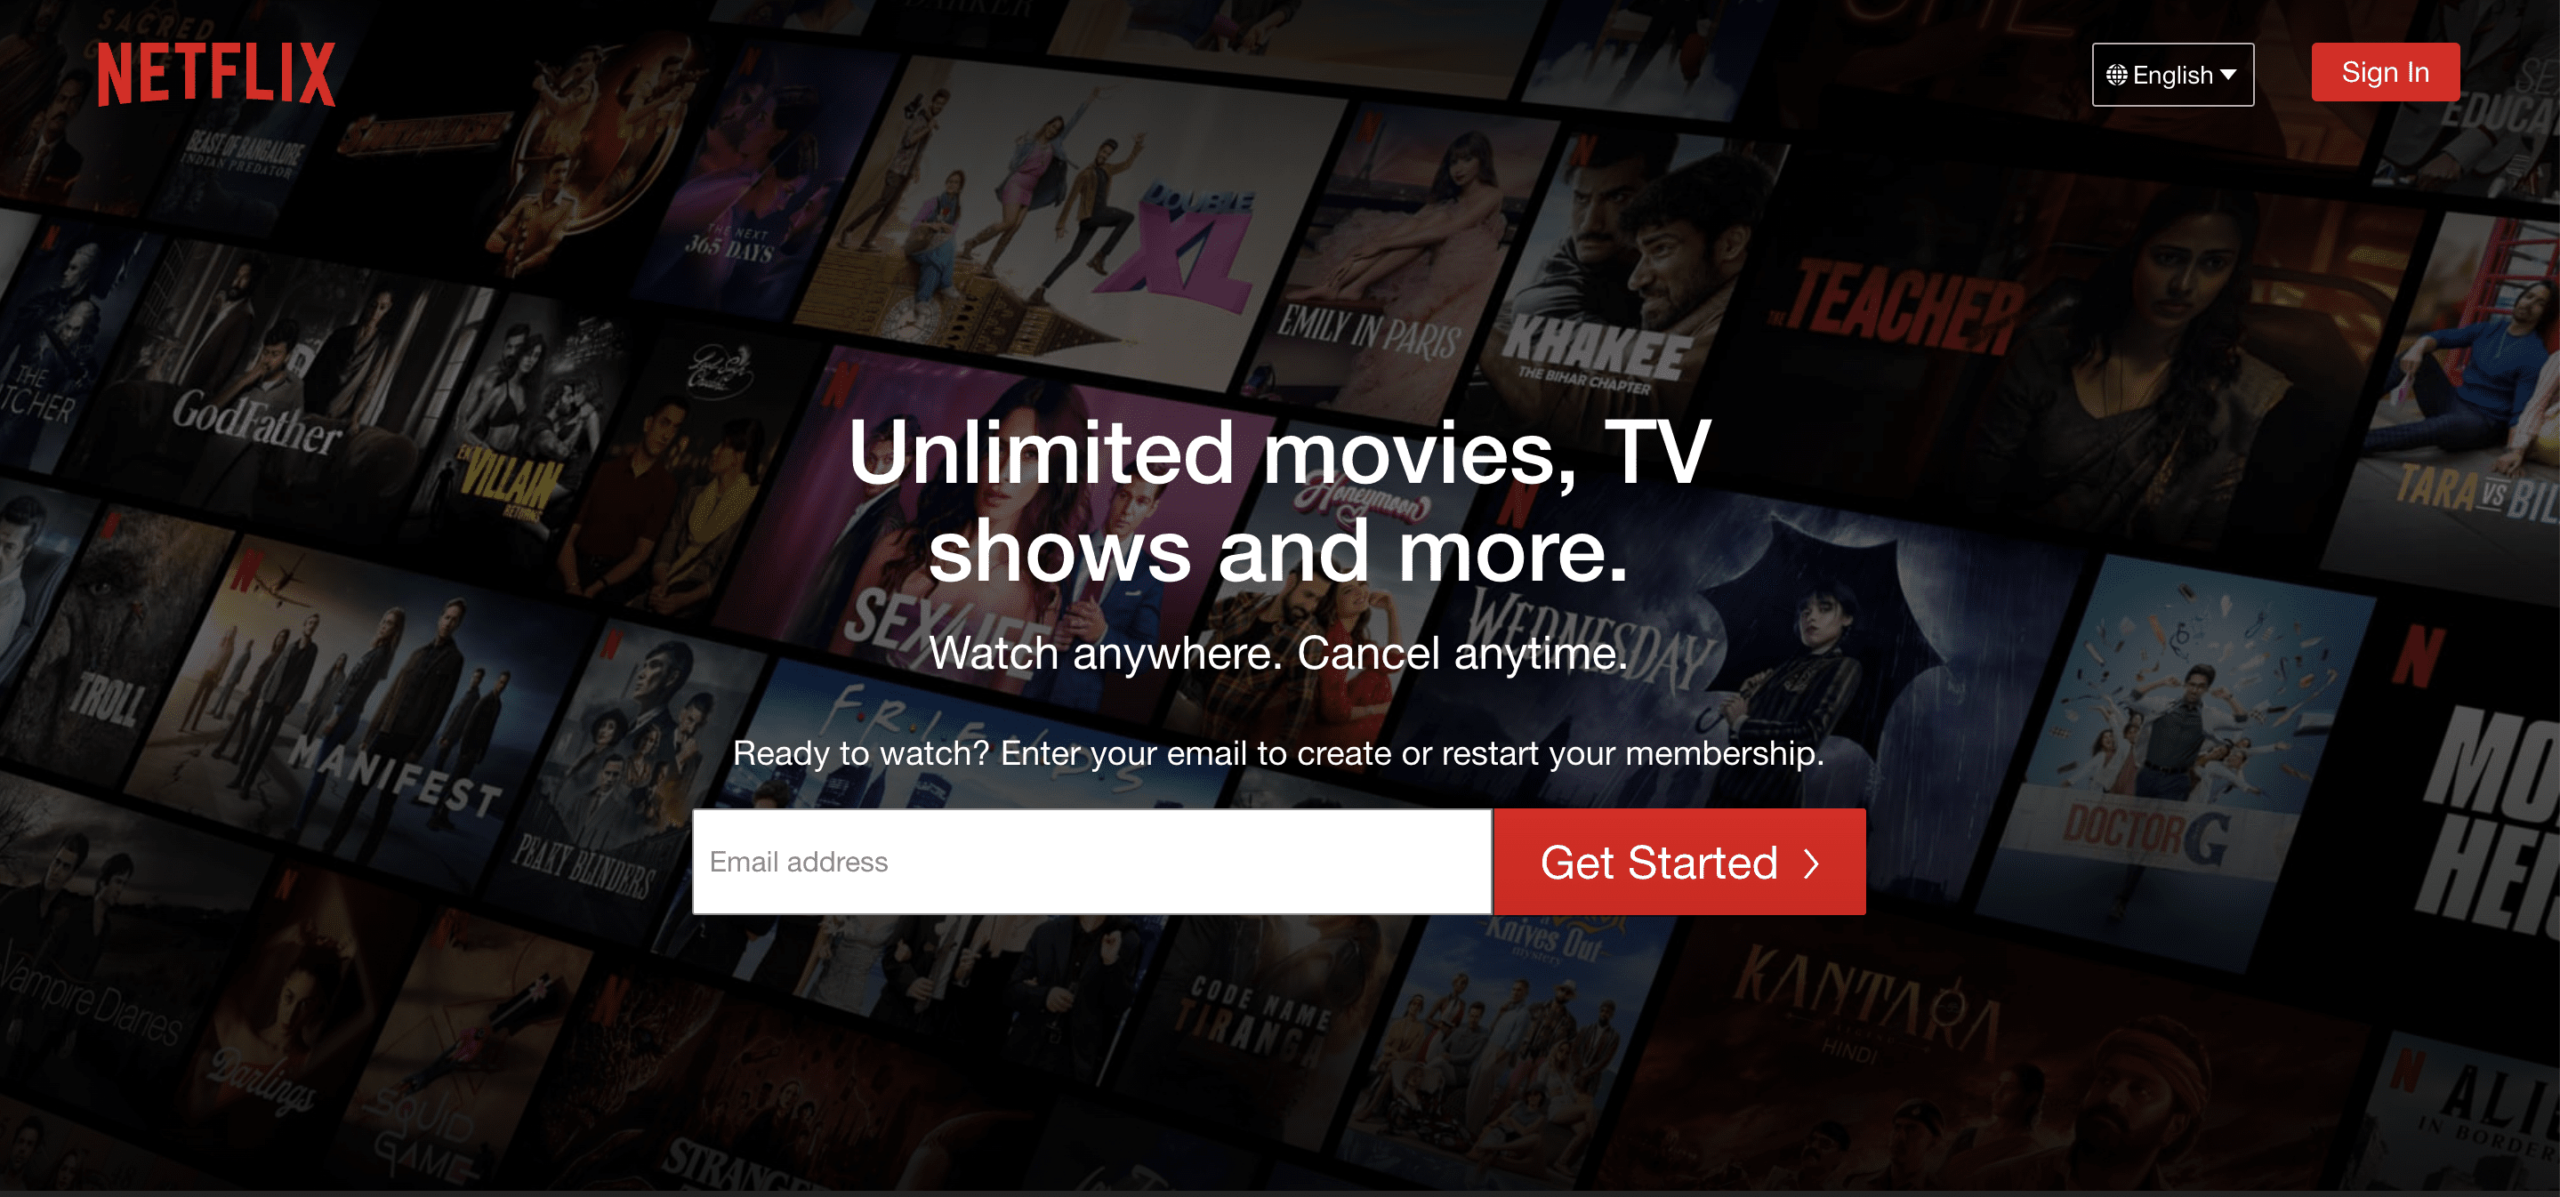 Legitieme manieren om betaald te krijgen om Netflix te kijken